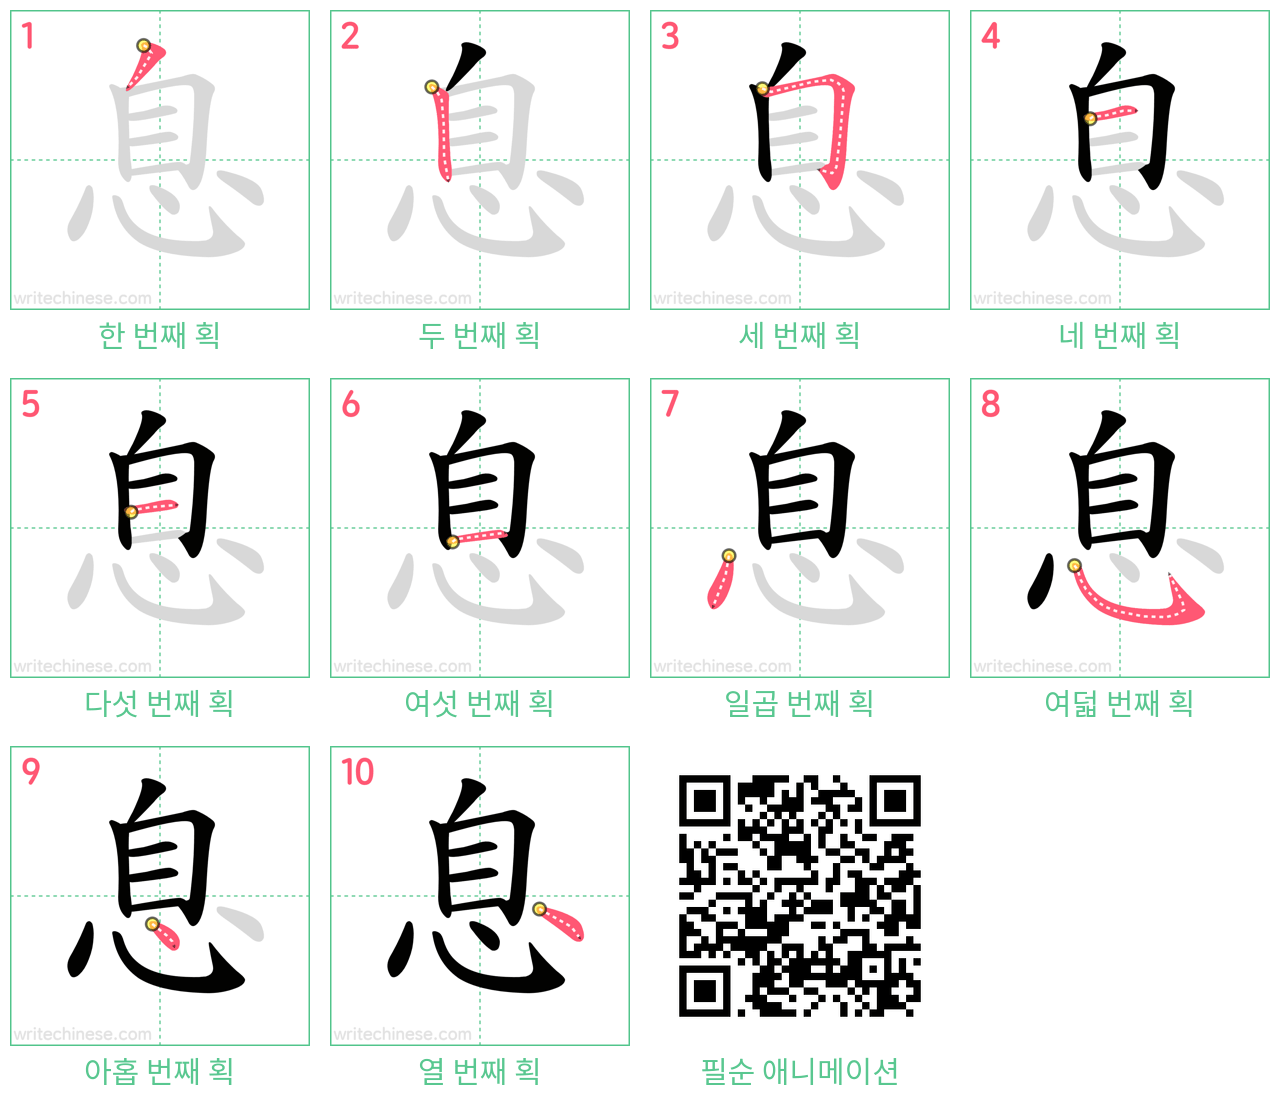 息 step-by-step stroke order diagrams